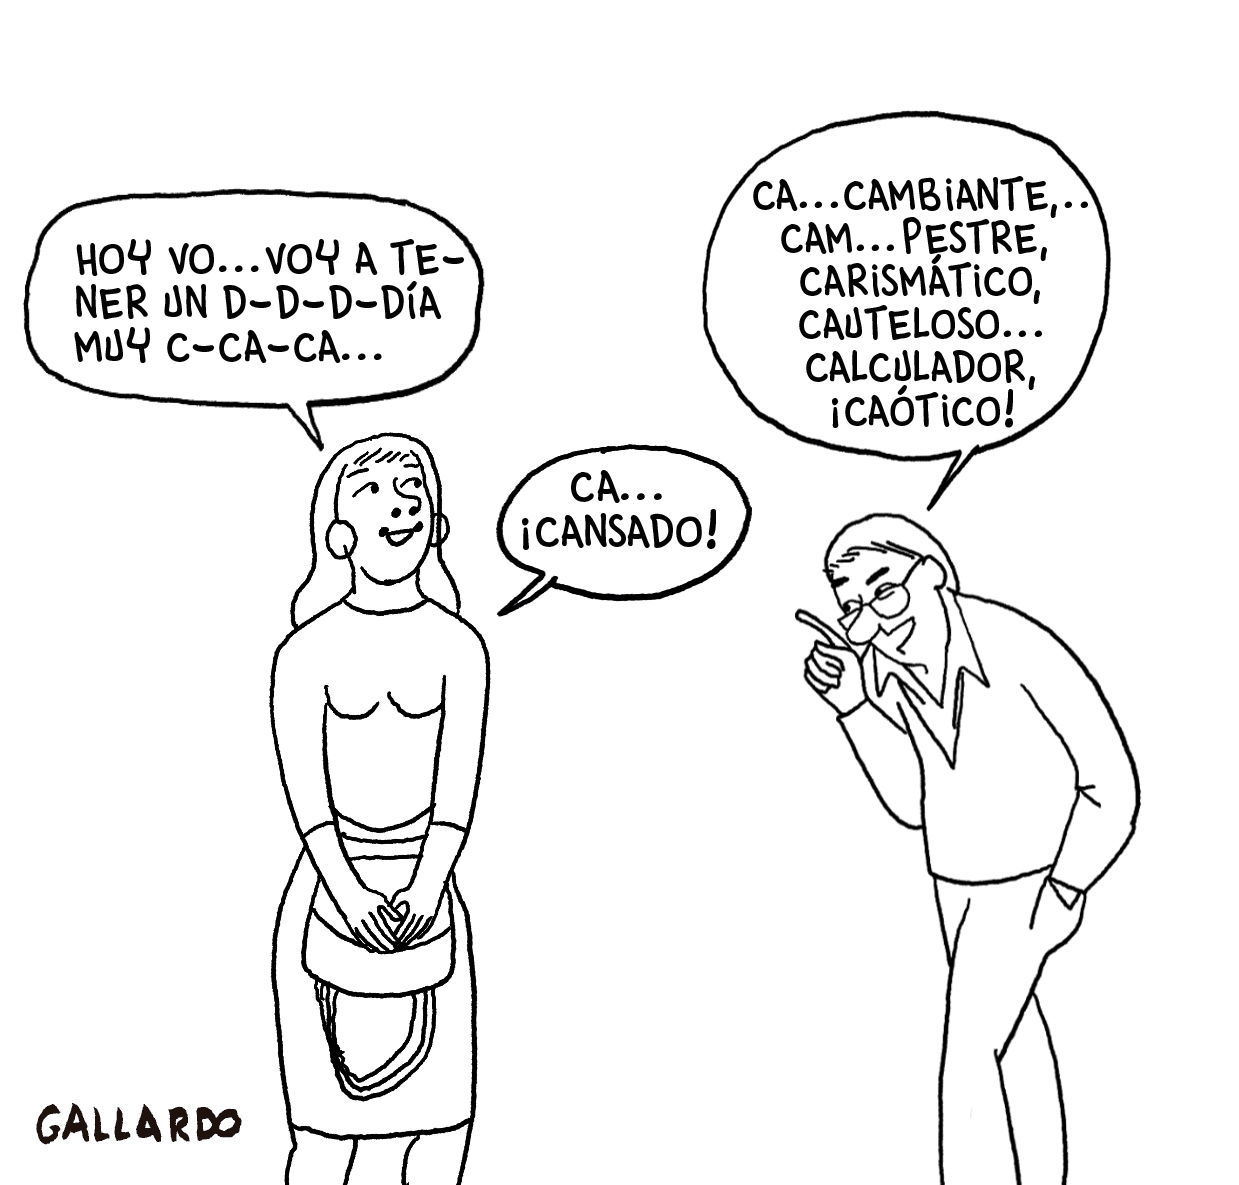 Viñeta de Miguel Gallardo en la cual una mujer con tartamudez intenta terminar una frase mientras su interlocutor intenta adivinar lo que va a decir sin dejarla terminar.